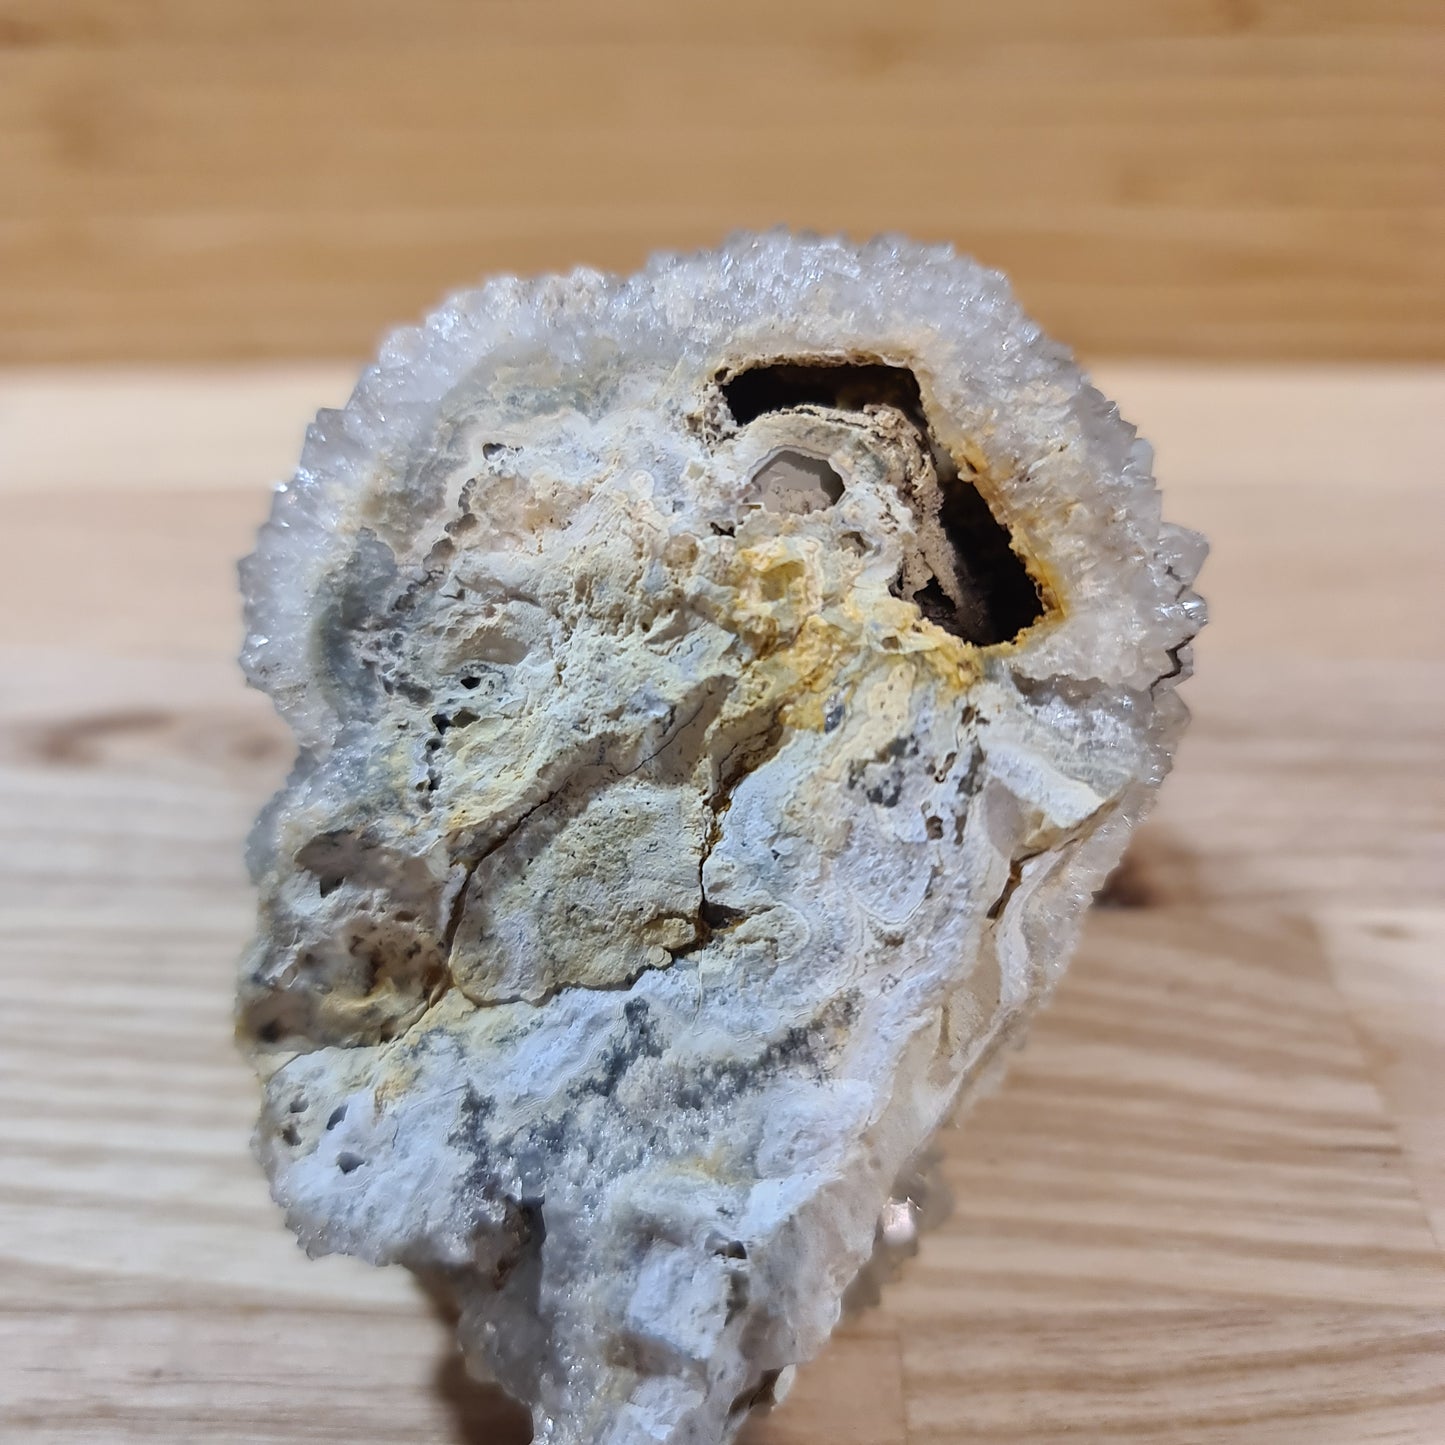 Amethyst Formation